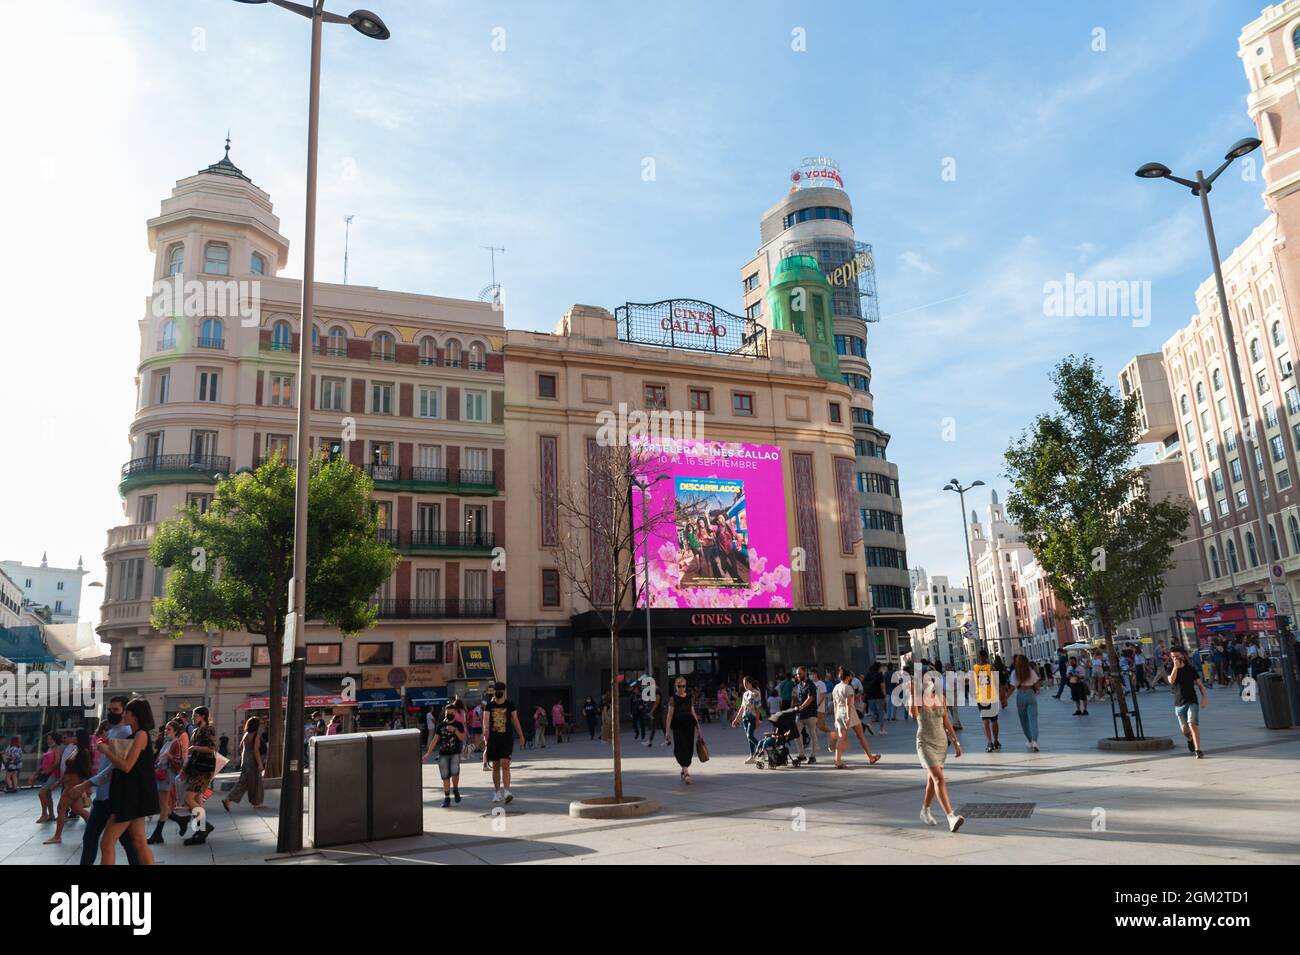 Madrid, Spanien; 5. September: Kinos Callao auf der Plaza de Callao mitten am Nachmittag mit Spaziergängen. In der Mitte des COVID Inc Stockfoto